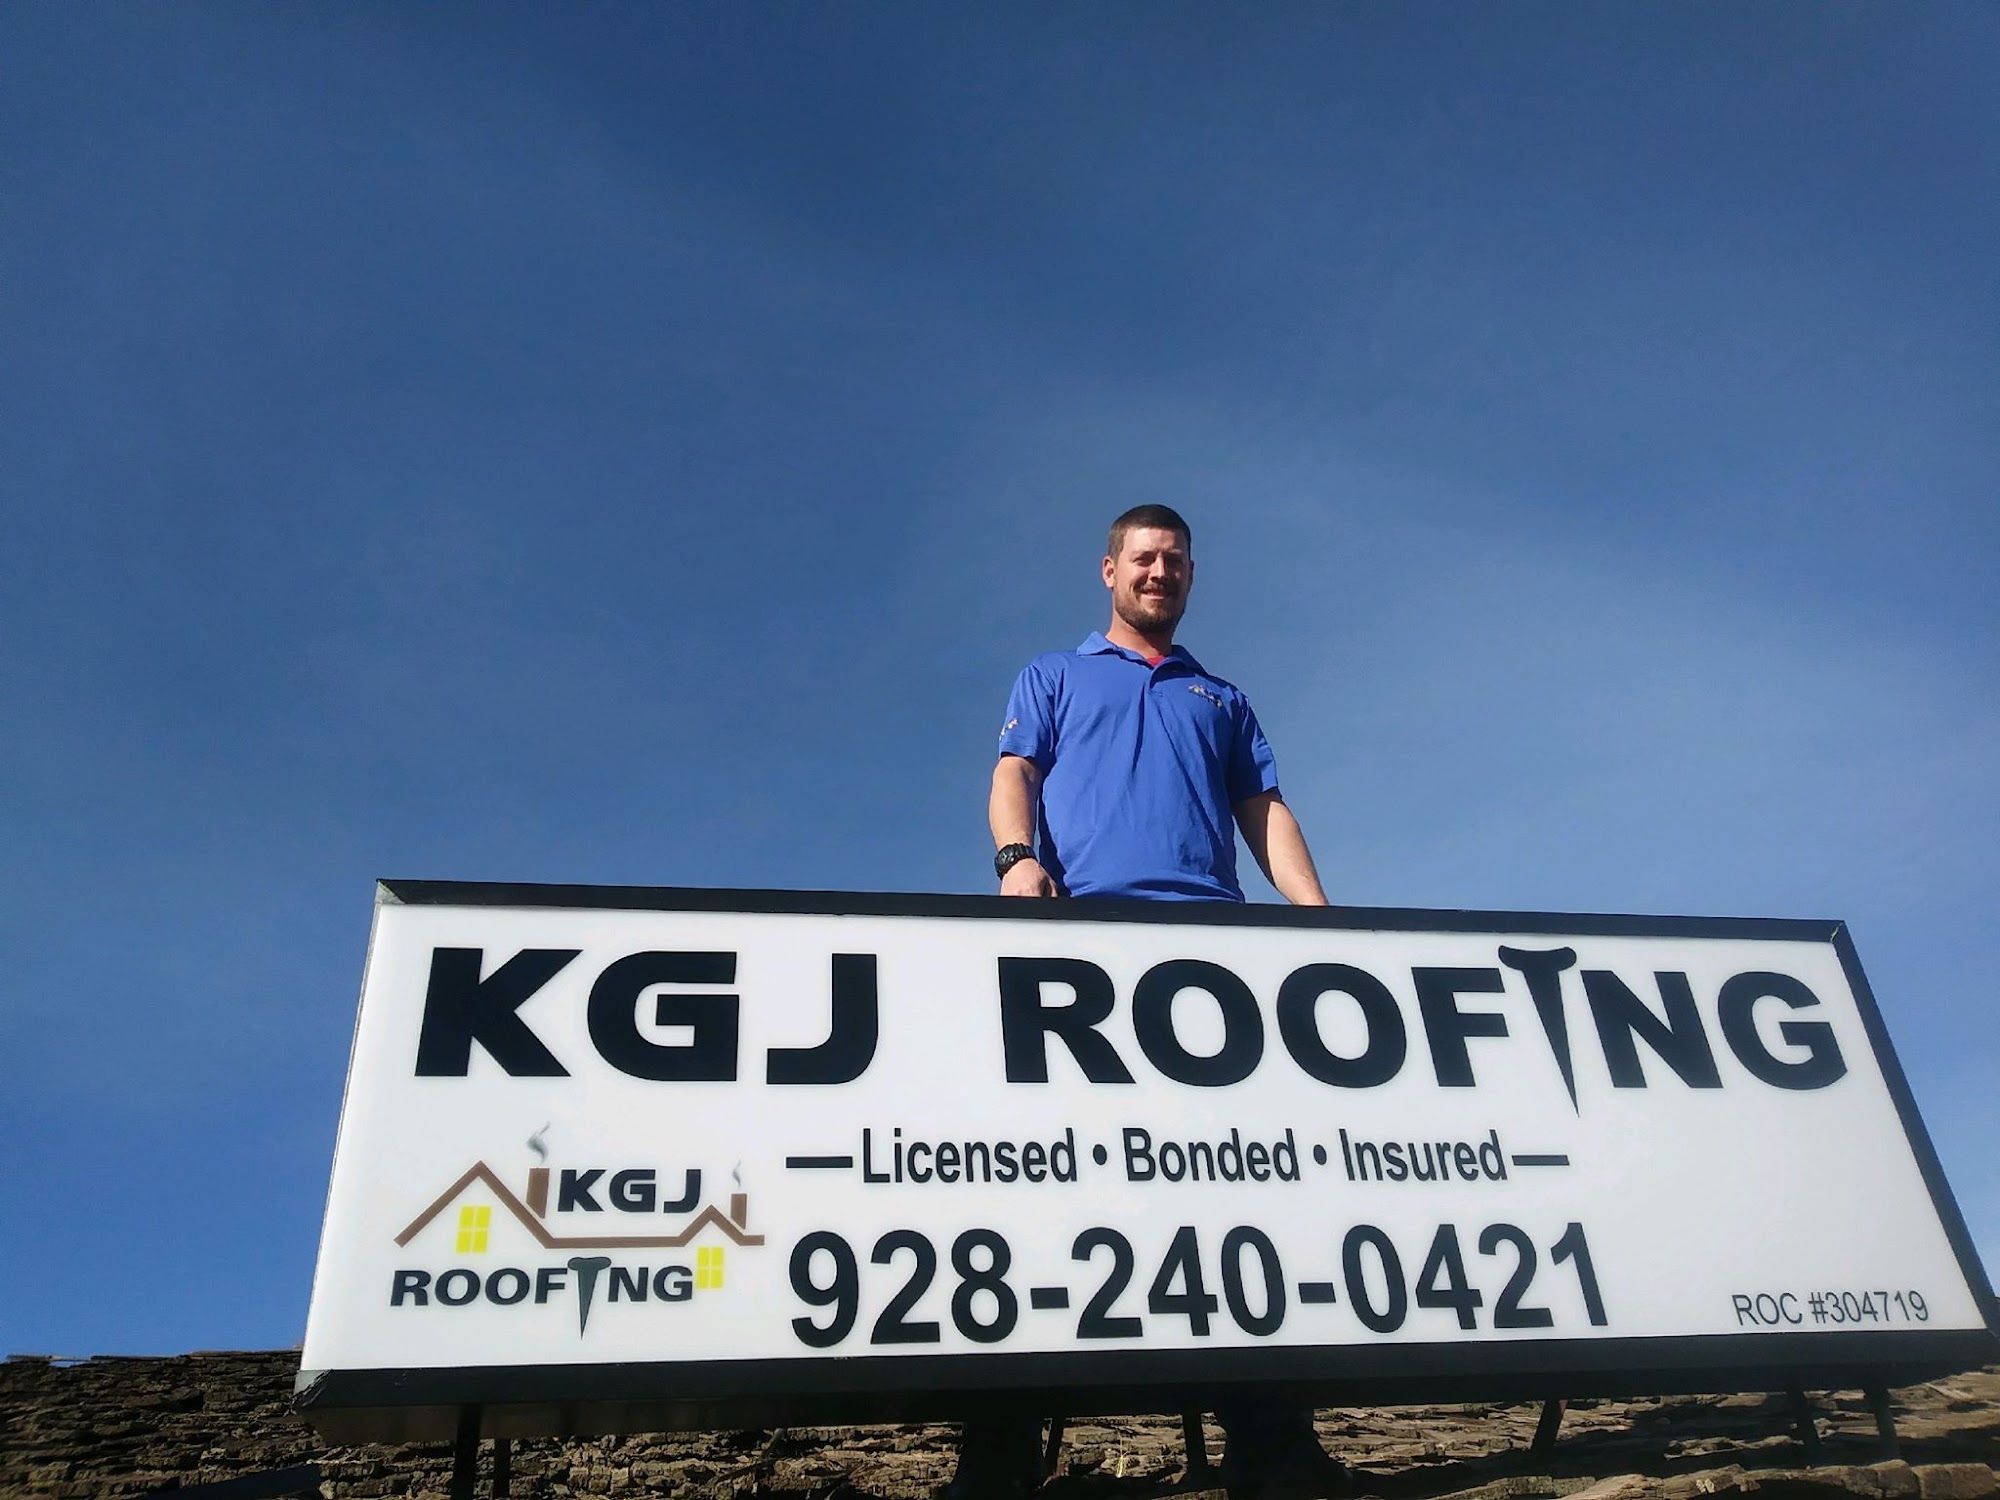 KGJ Roofing